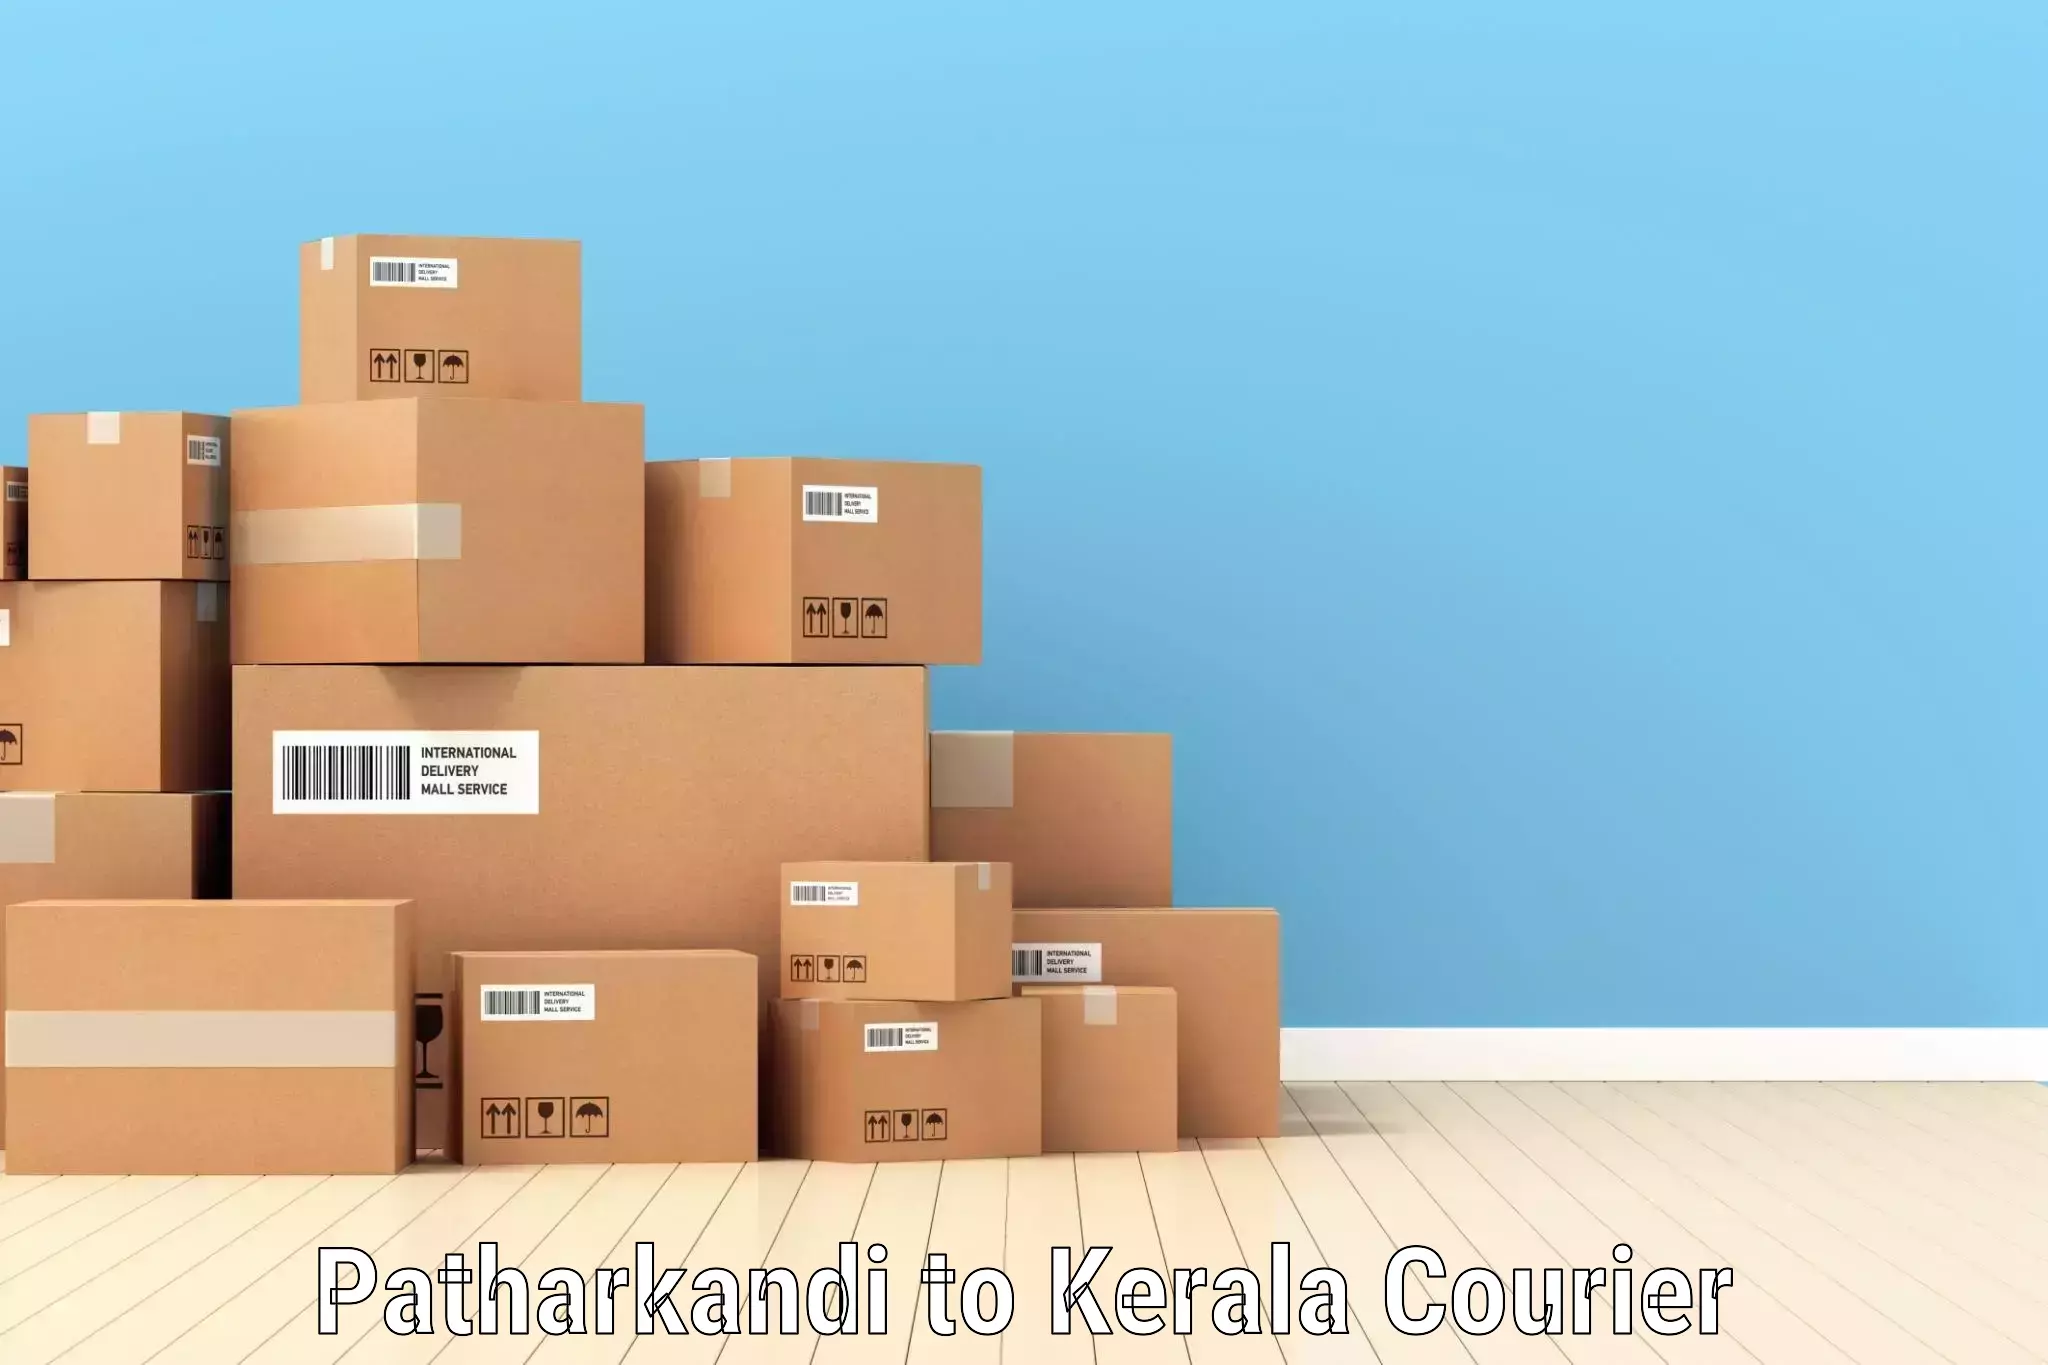 Integrated shipping services Patharkandi to Panthalam